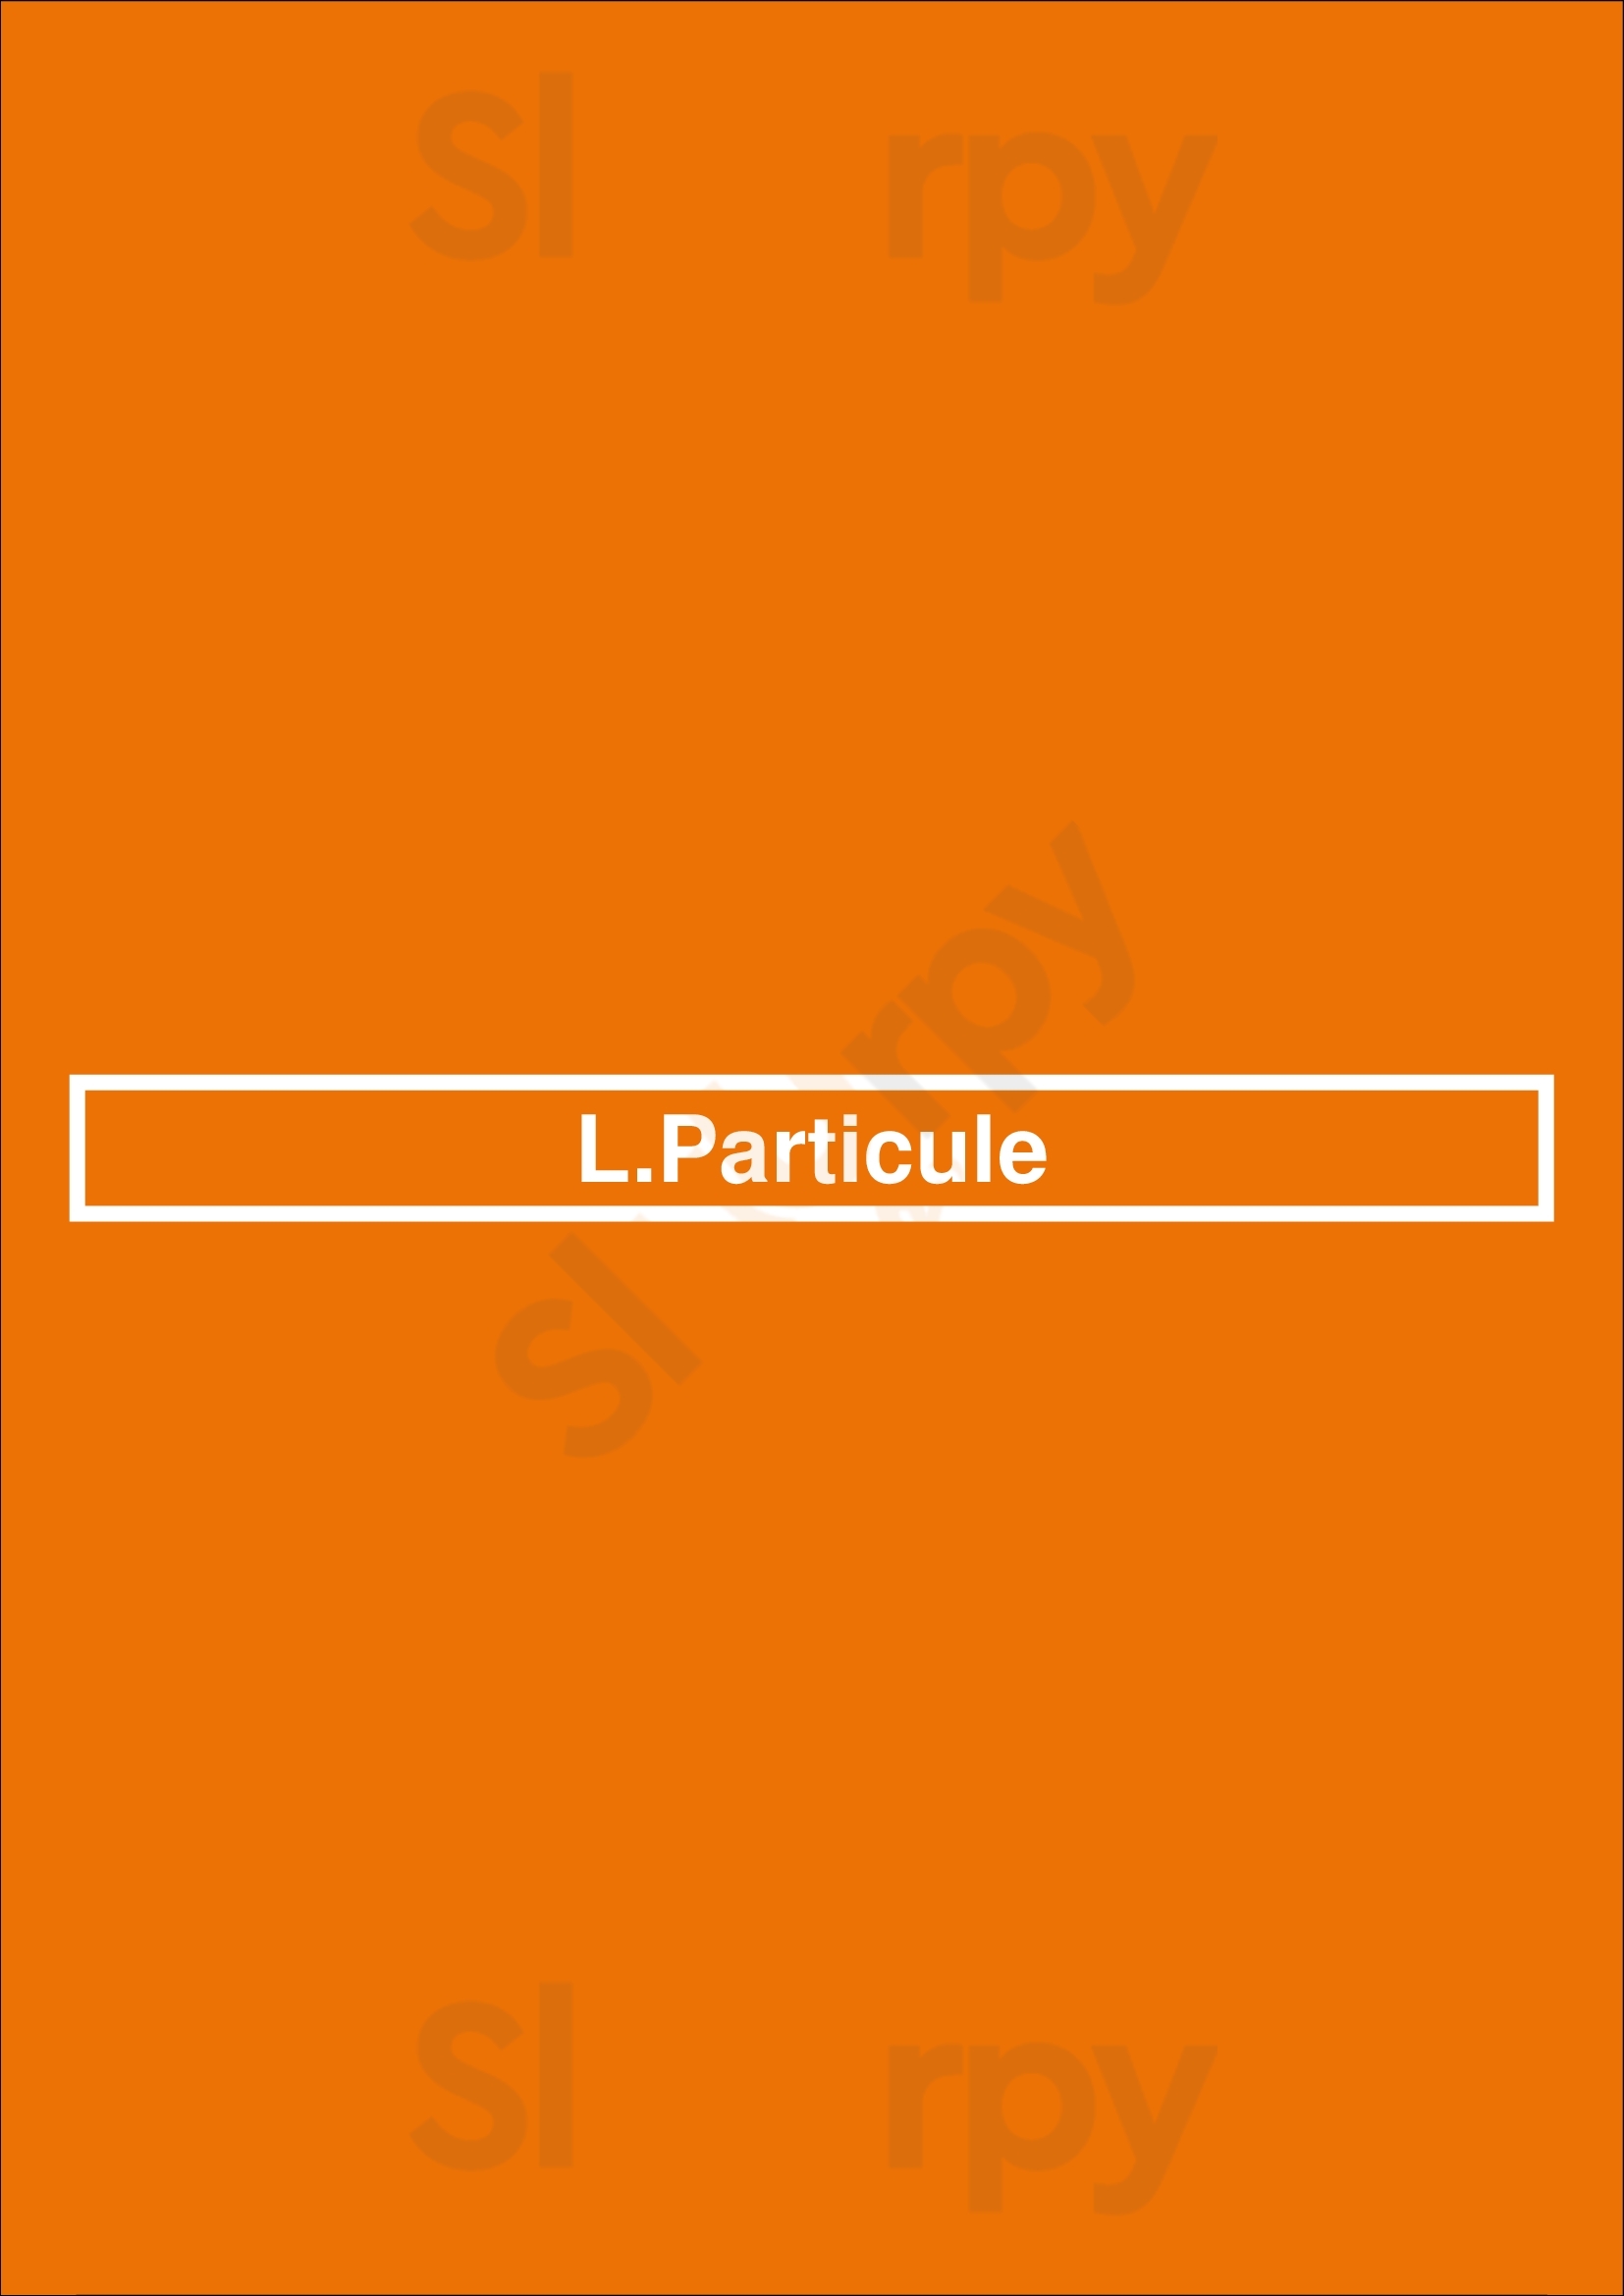 Lyon Particule Lyon Menu - 1